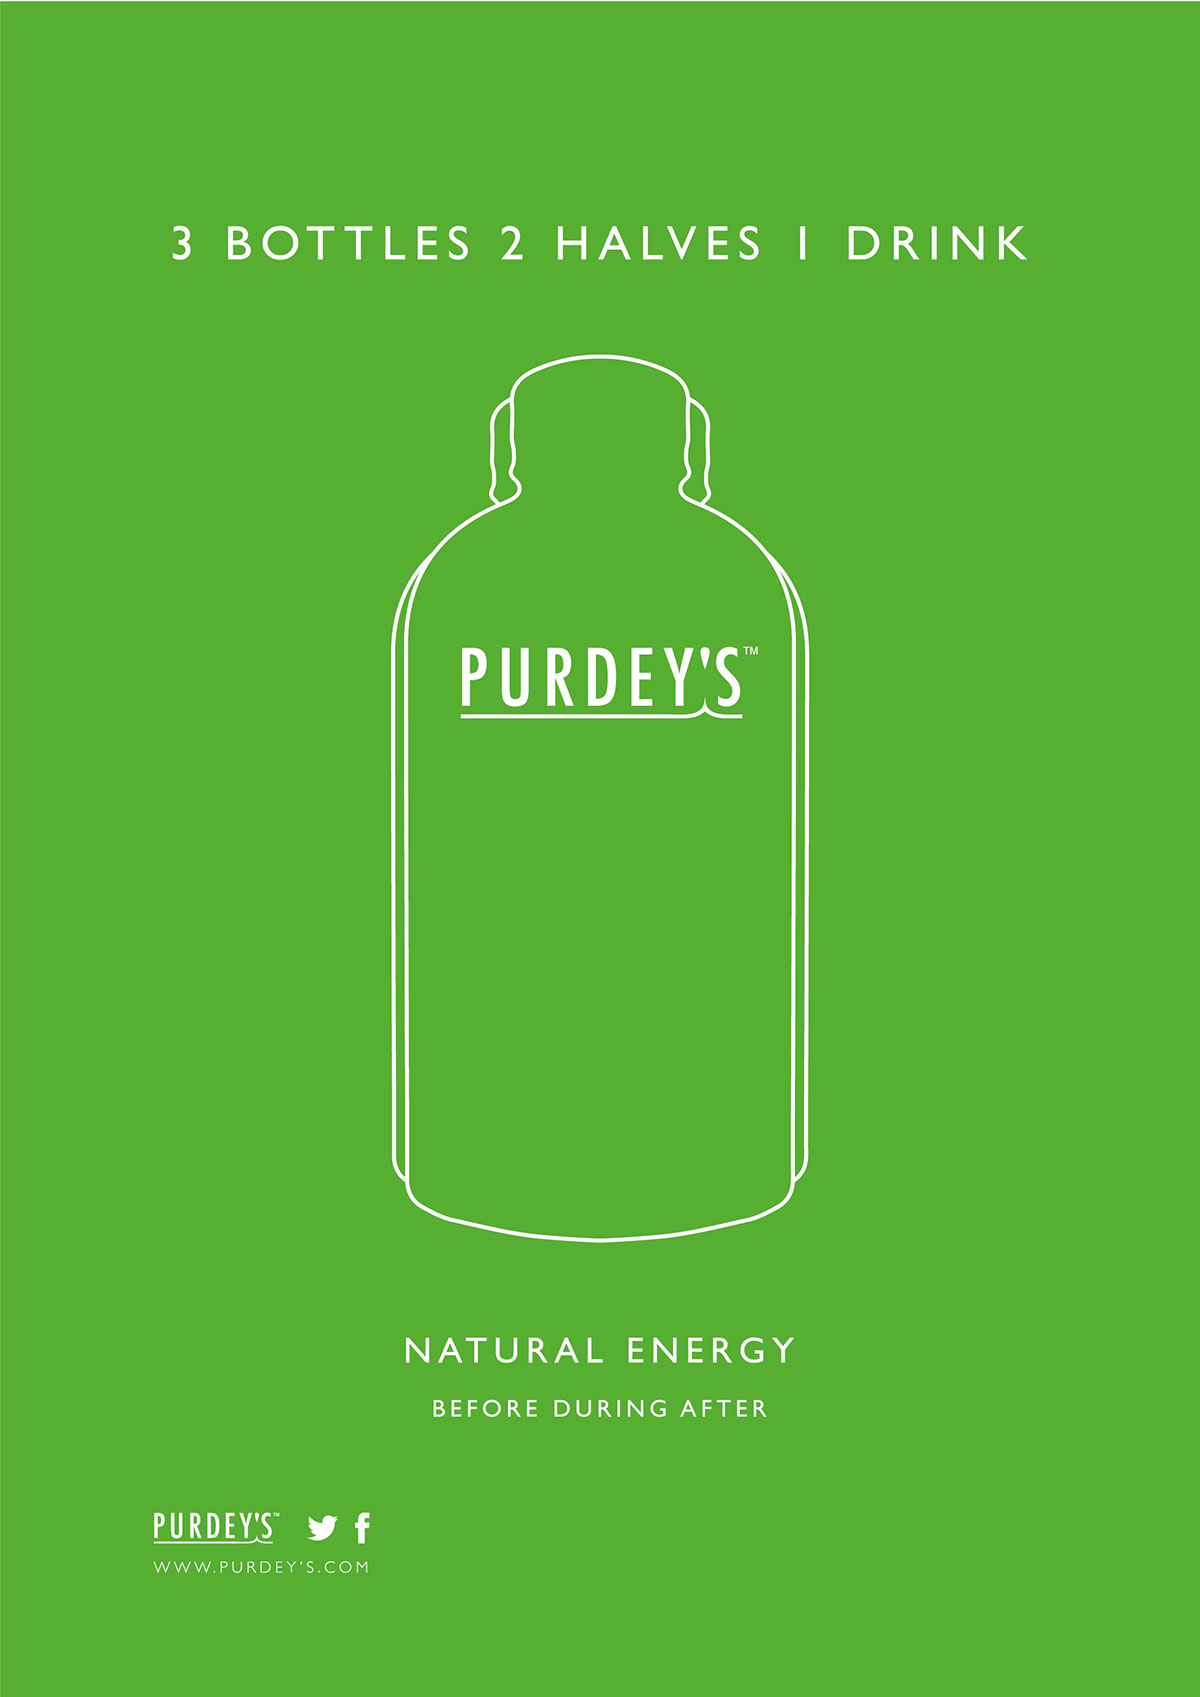 Purdey's purdeys D&AD new blood re-brand